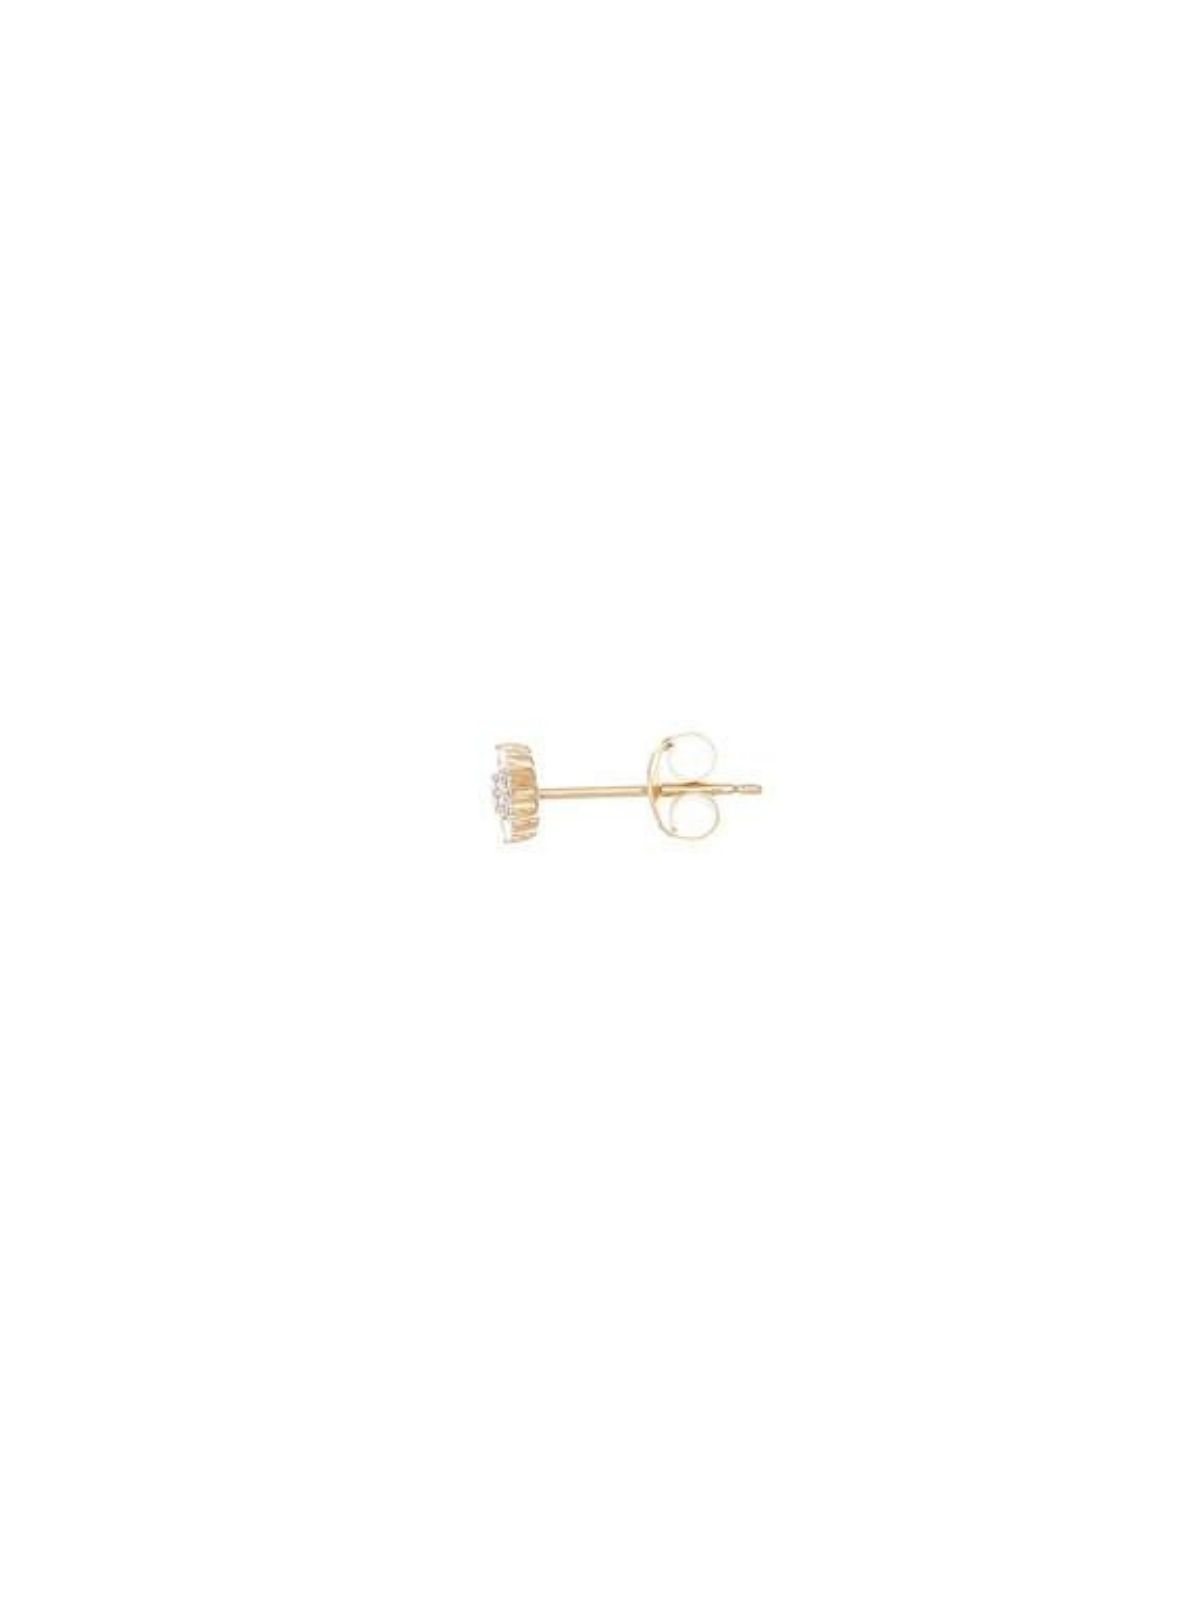 14k Gold Crystal Lotus Flower Earring - Single (Pair $298) Earrings By Charlotte 